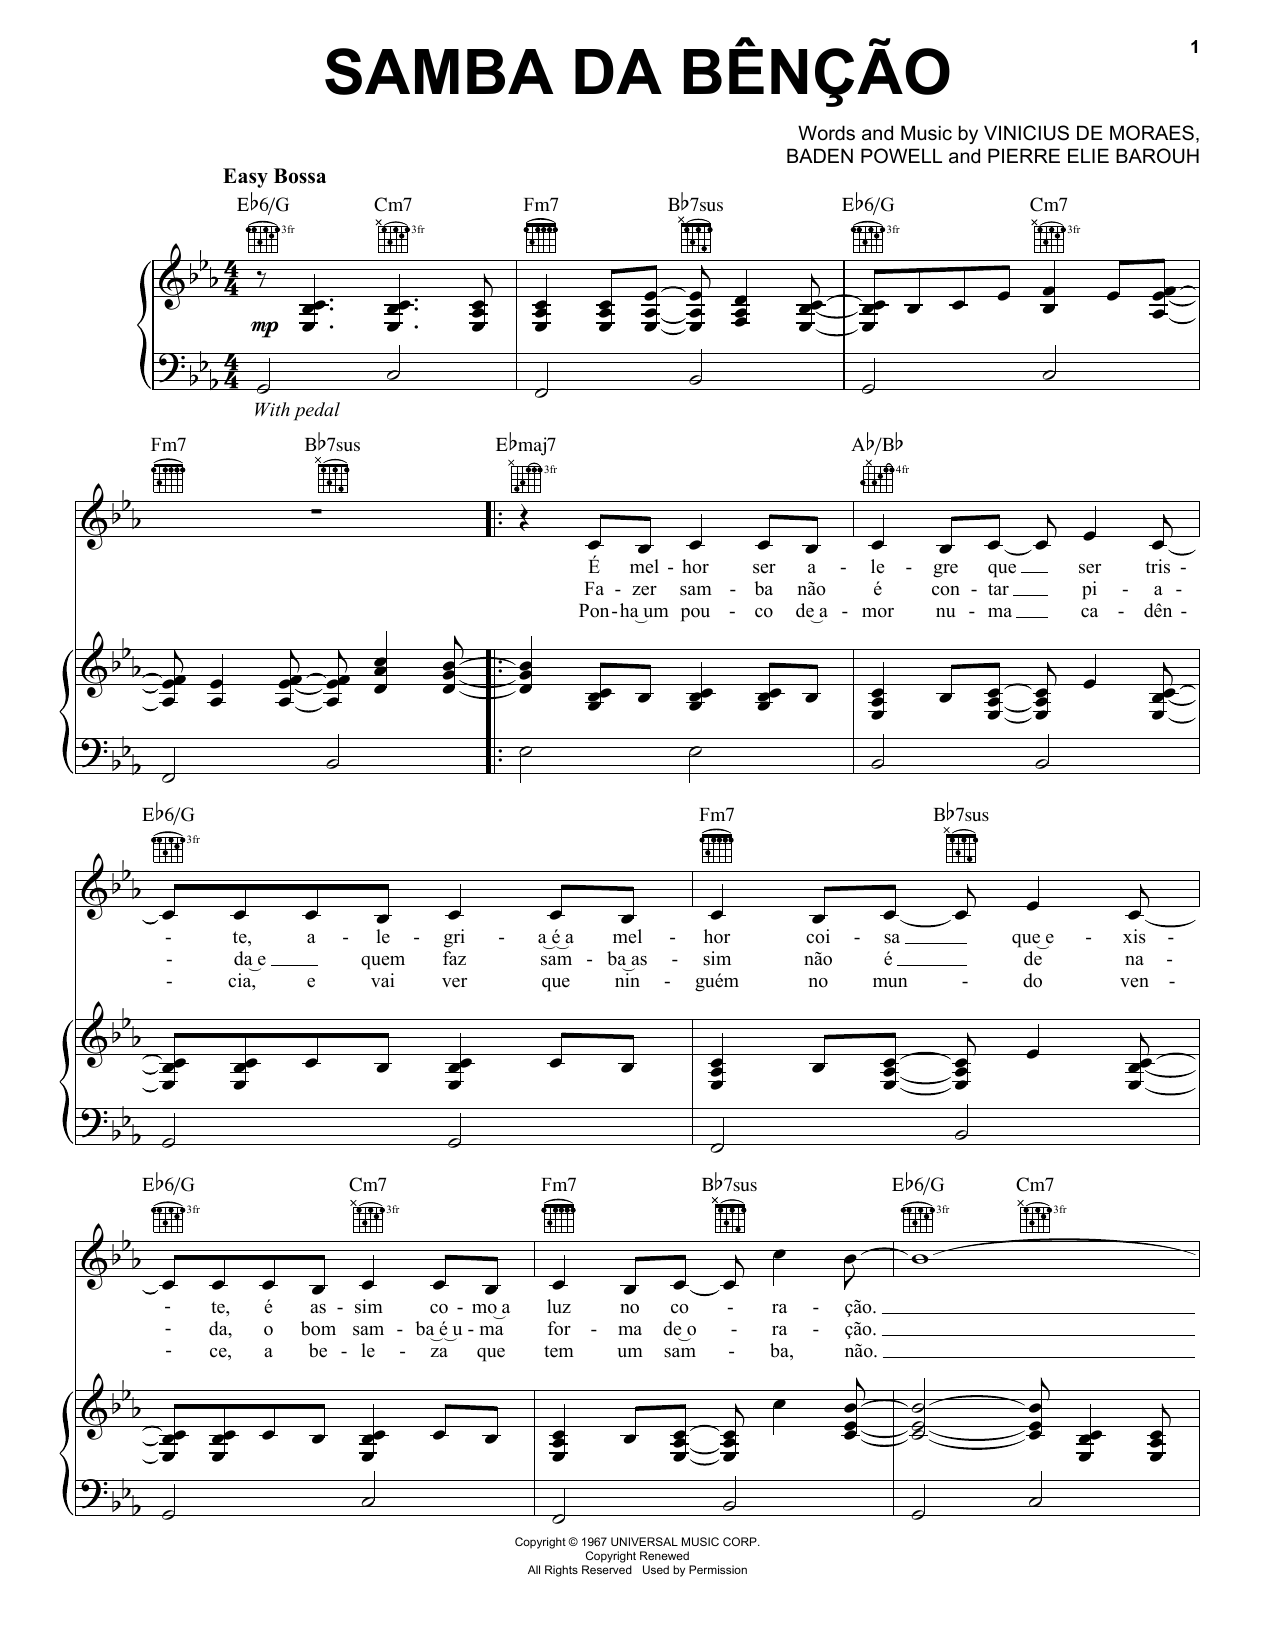 Bebel Gilberto Samba da Bencao Sheet Music Notes & Chords for Piano, Vocal & Guitar (Right-Hand Melody) - Download or Print PDF